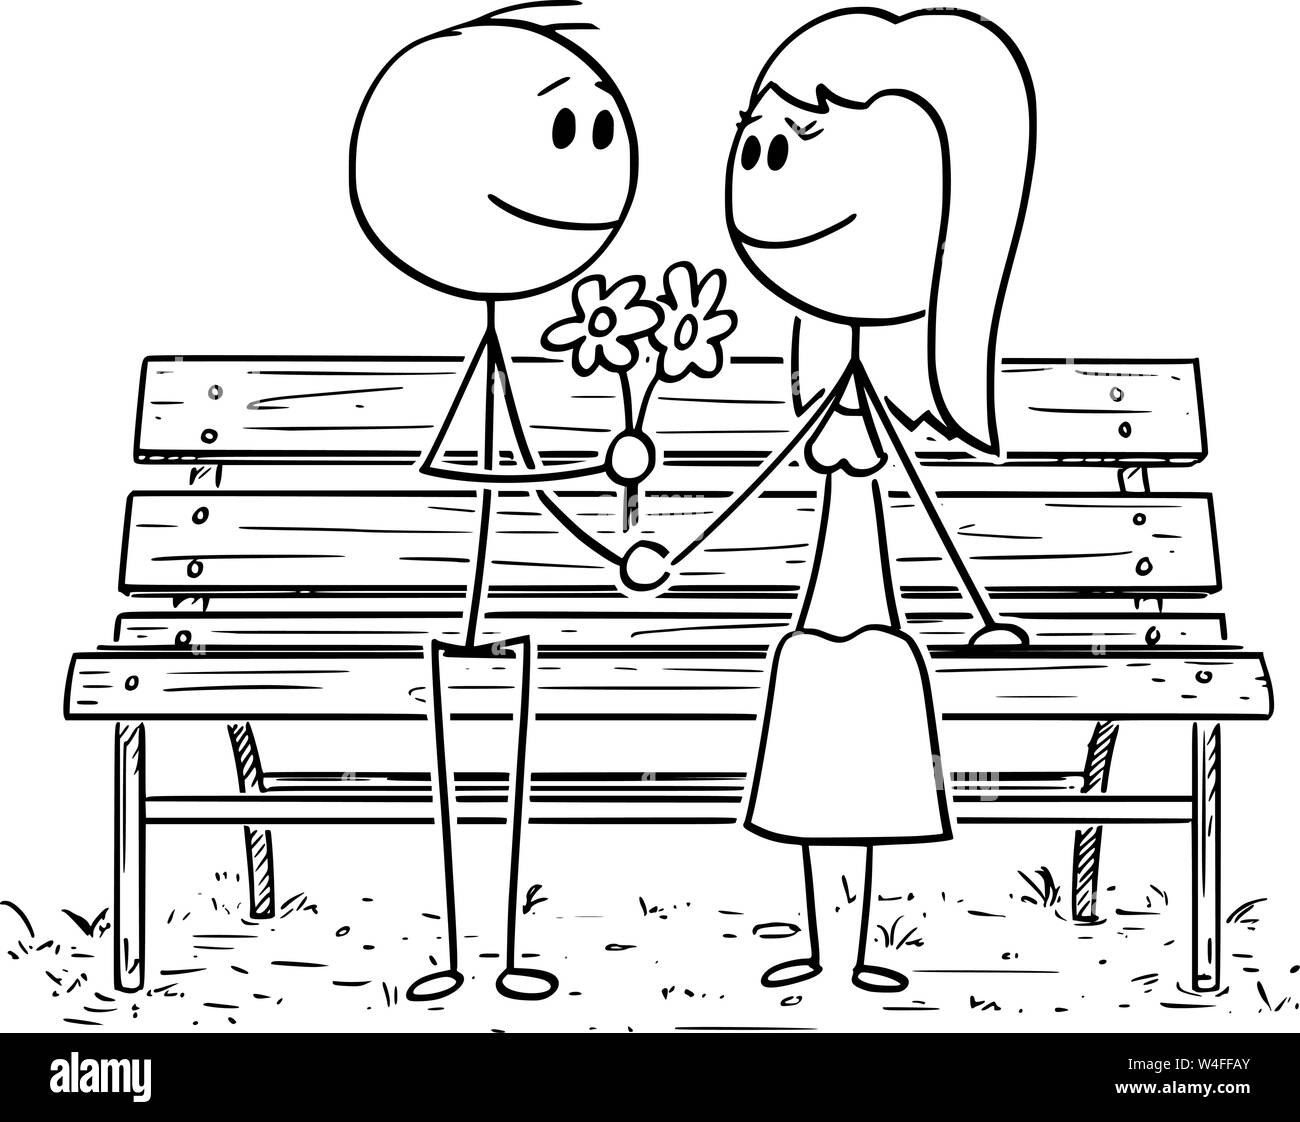 Cartoon stick Zeichnung konzeptuelle Abbildung: Romantisches Paar sitzen auf einer Parkbank oder Sitz, der Mensch ist mit Blumen zu Frau. Stock Vektor